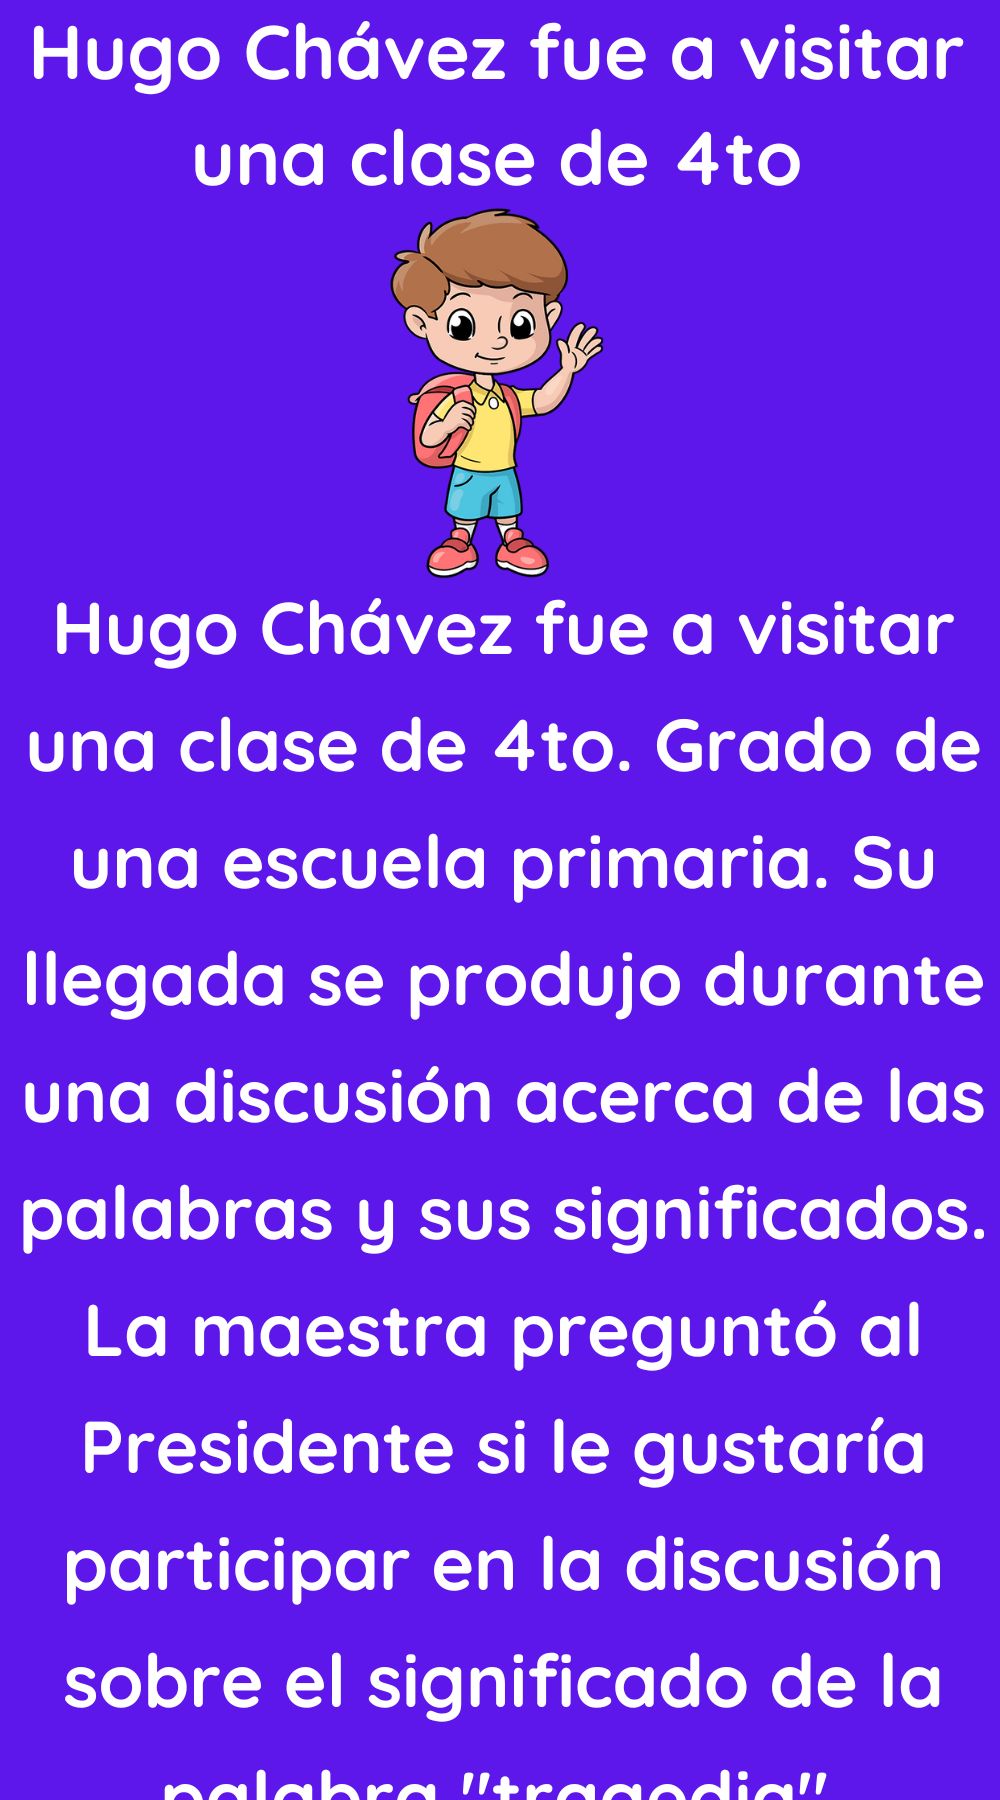 Hugo Chávez fue a visitar una clase de 4to